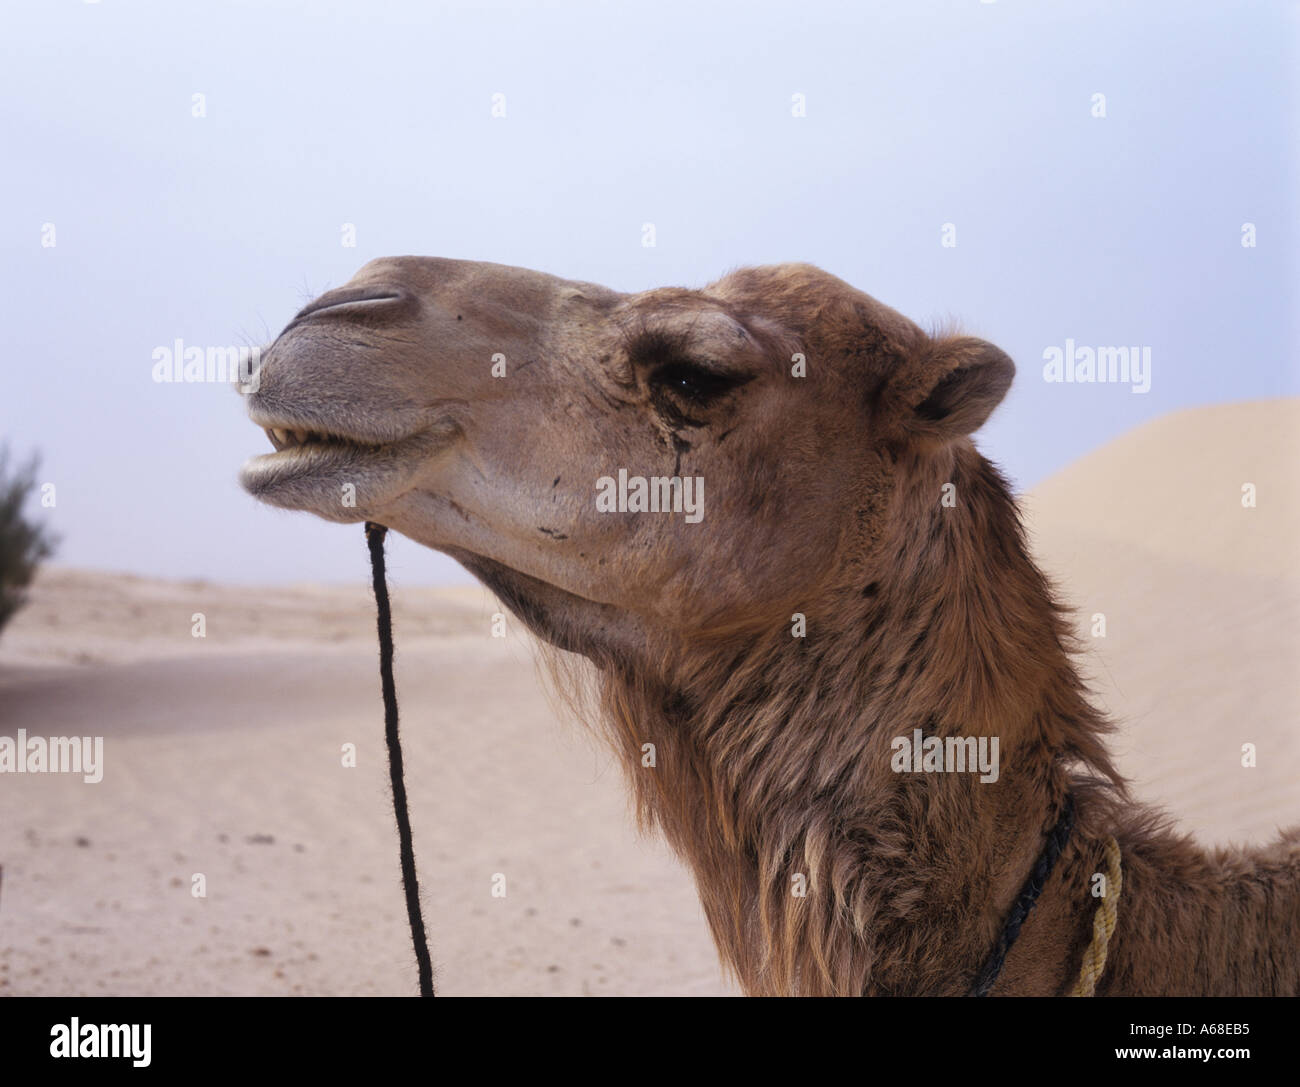 A camel in the Sahara desert, Tunisia Stock Photo